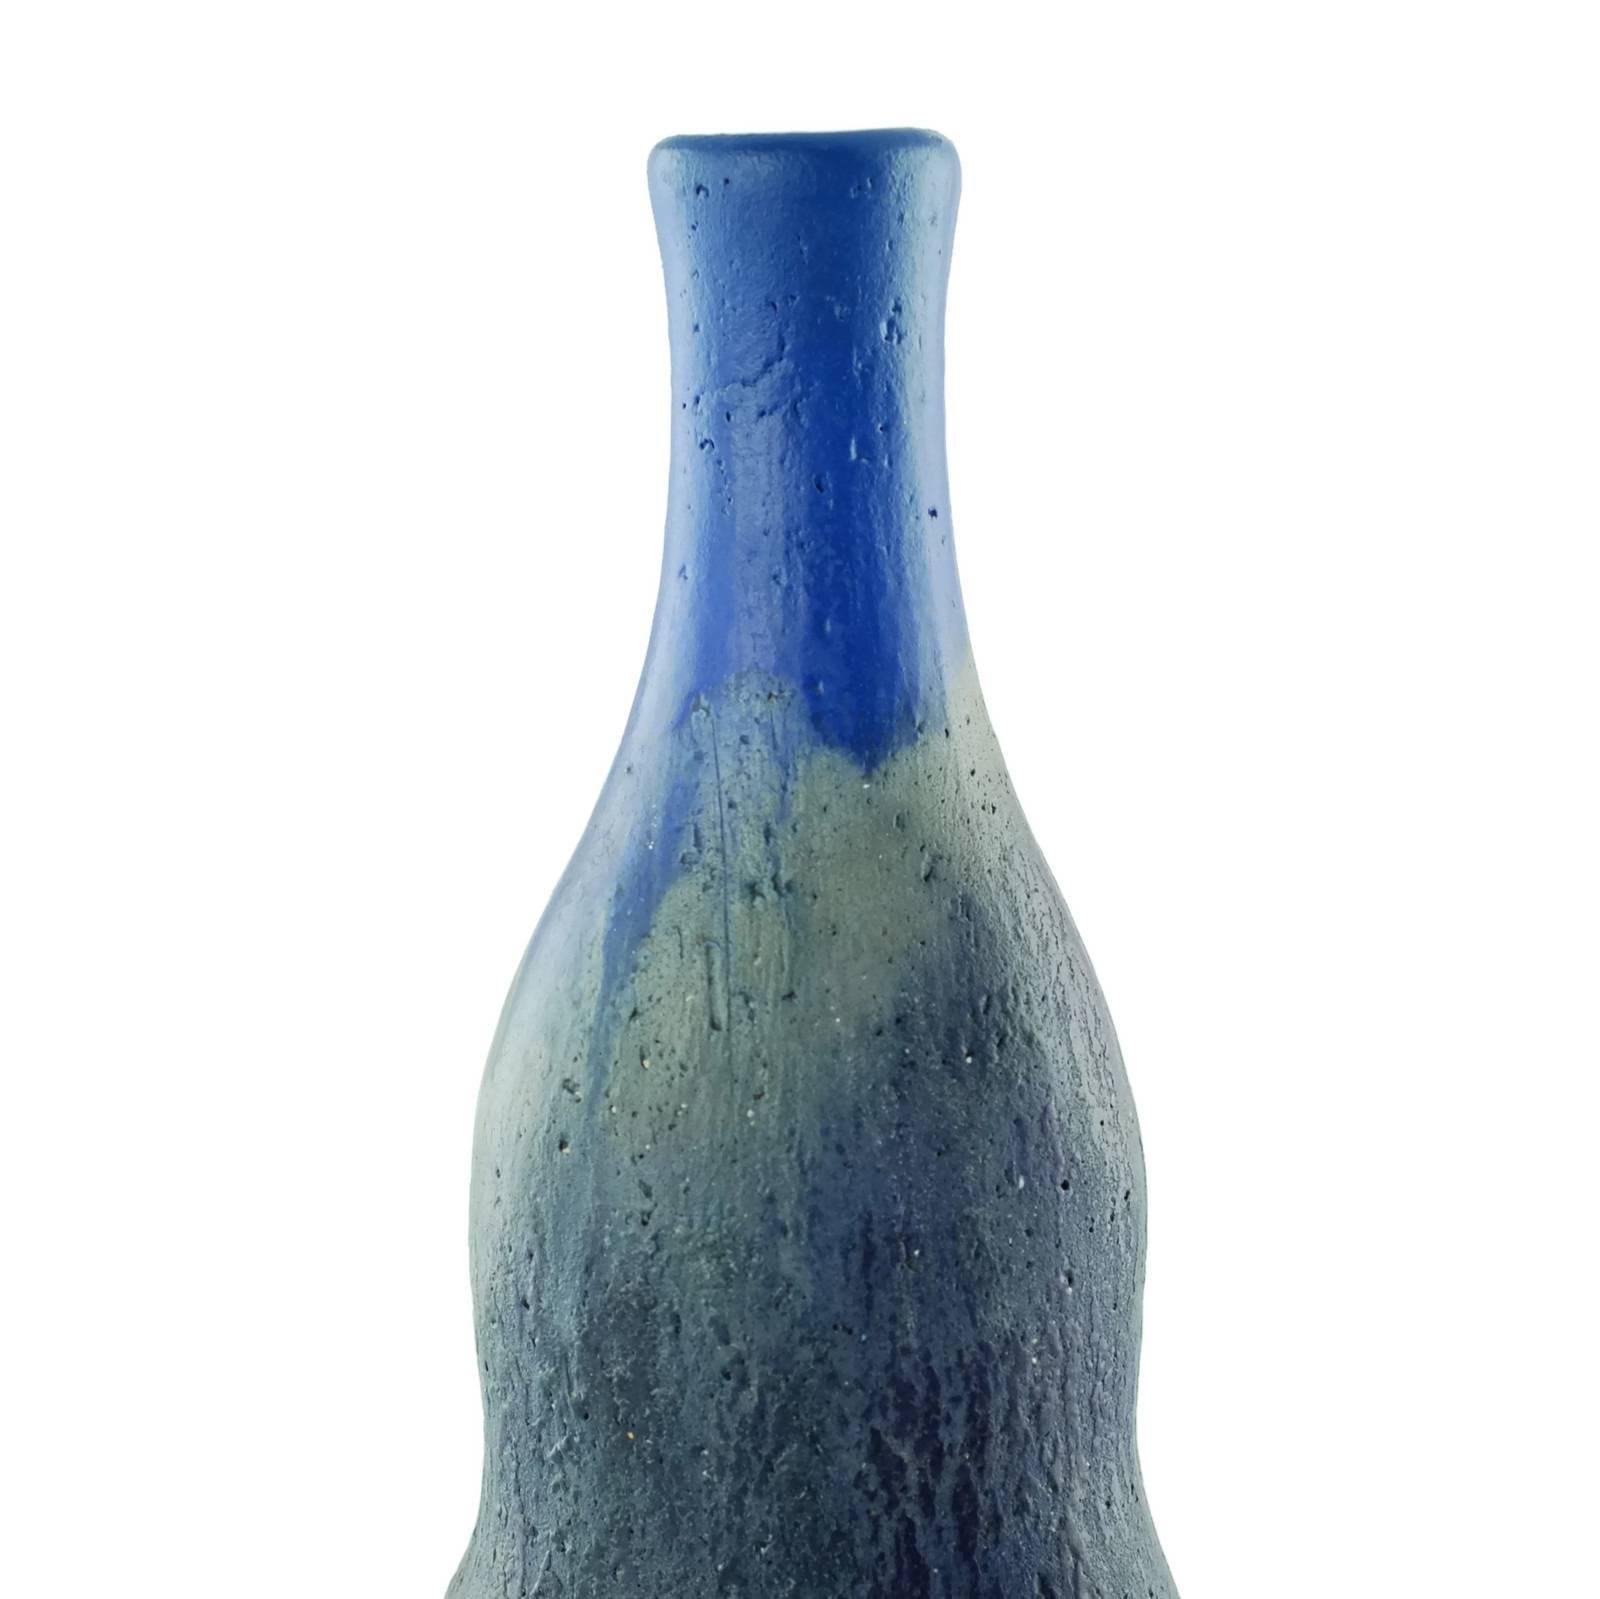 Glazed Midcentury Marcello Fantoni for Raymor Double Gourd Form Vase For Sale